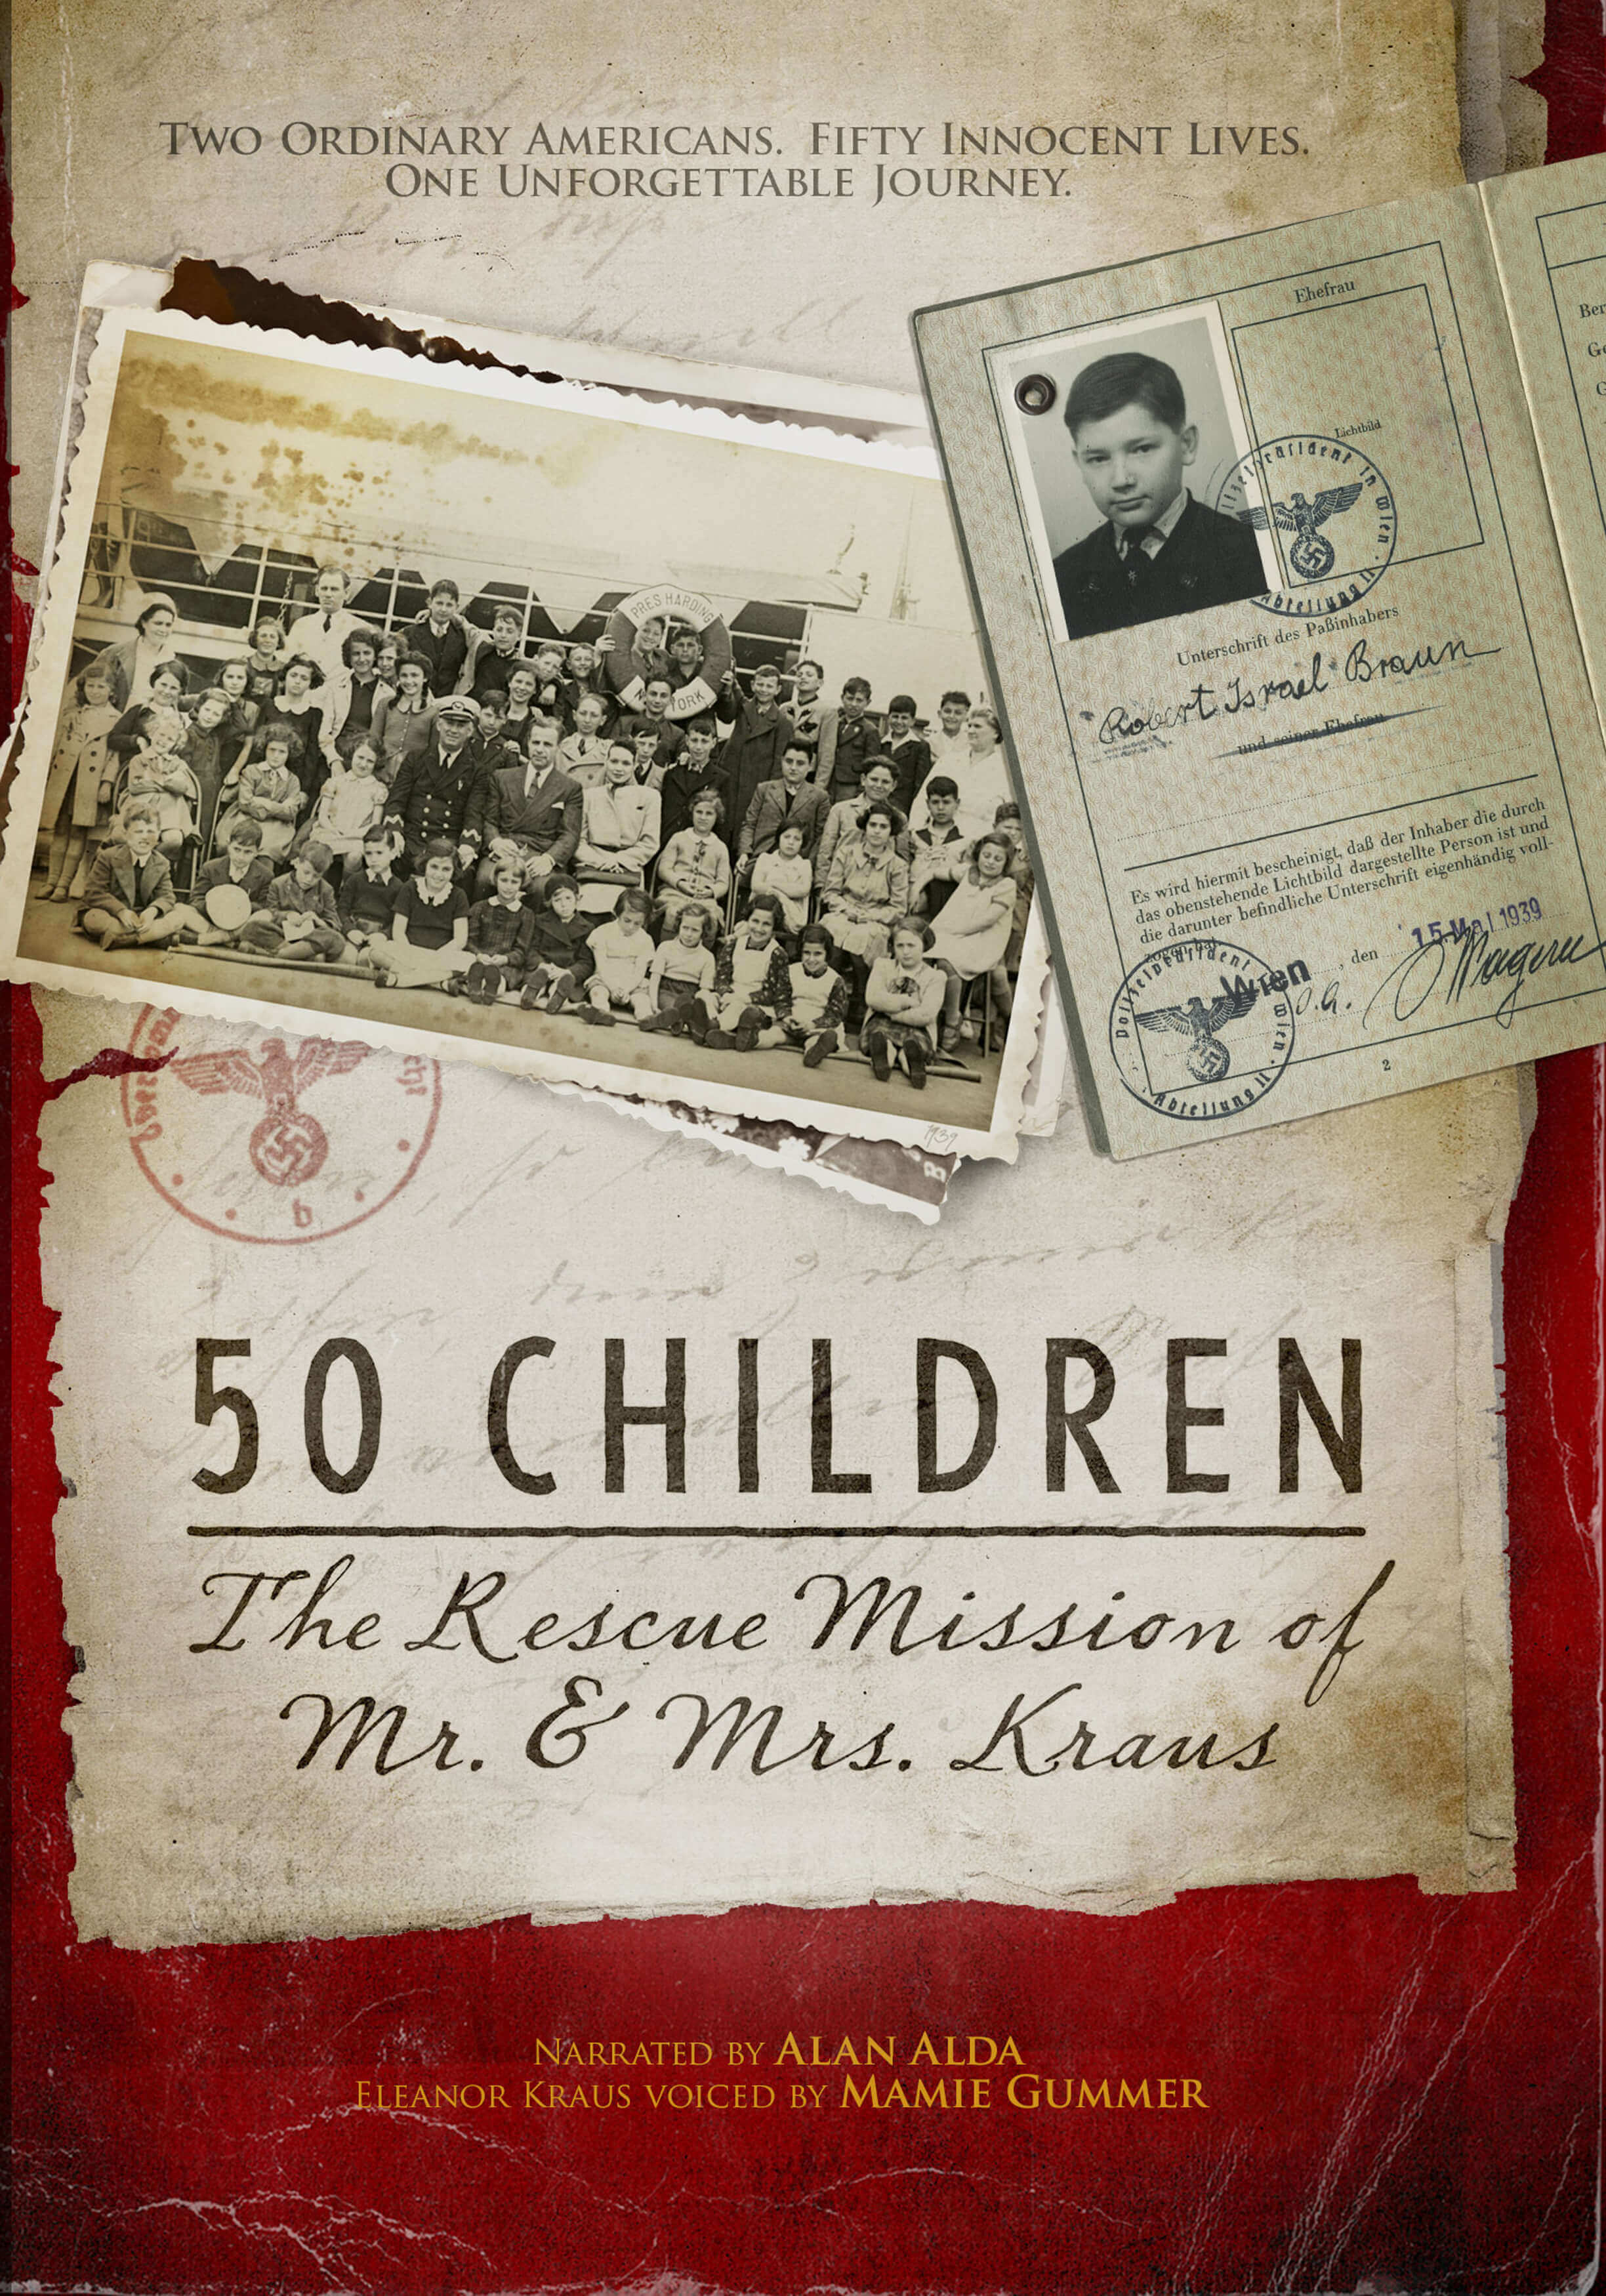 50 Children DVD cover (1)